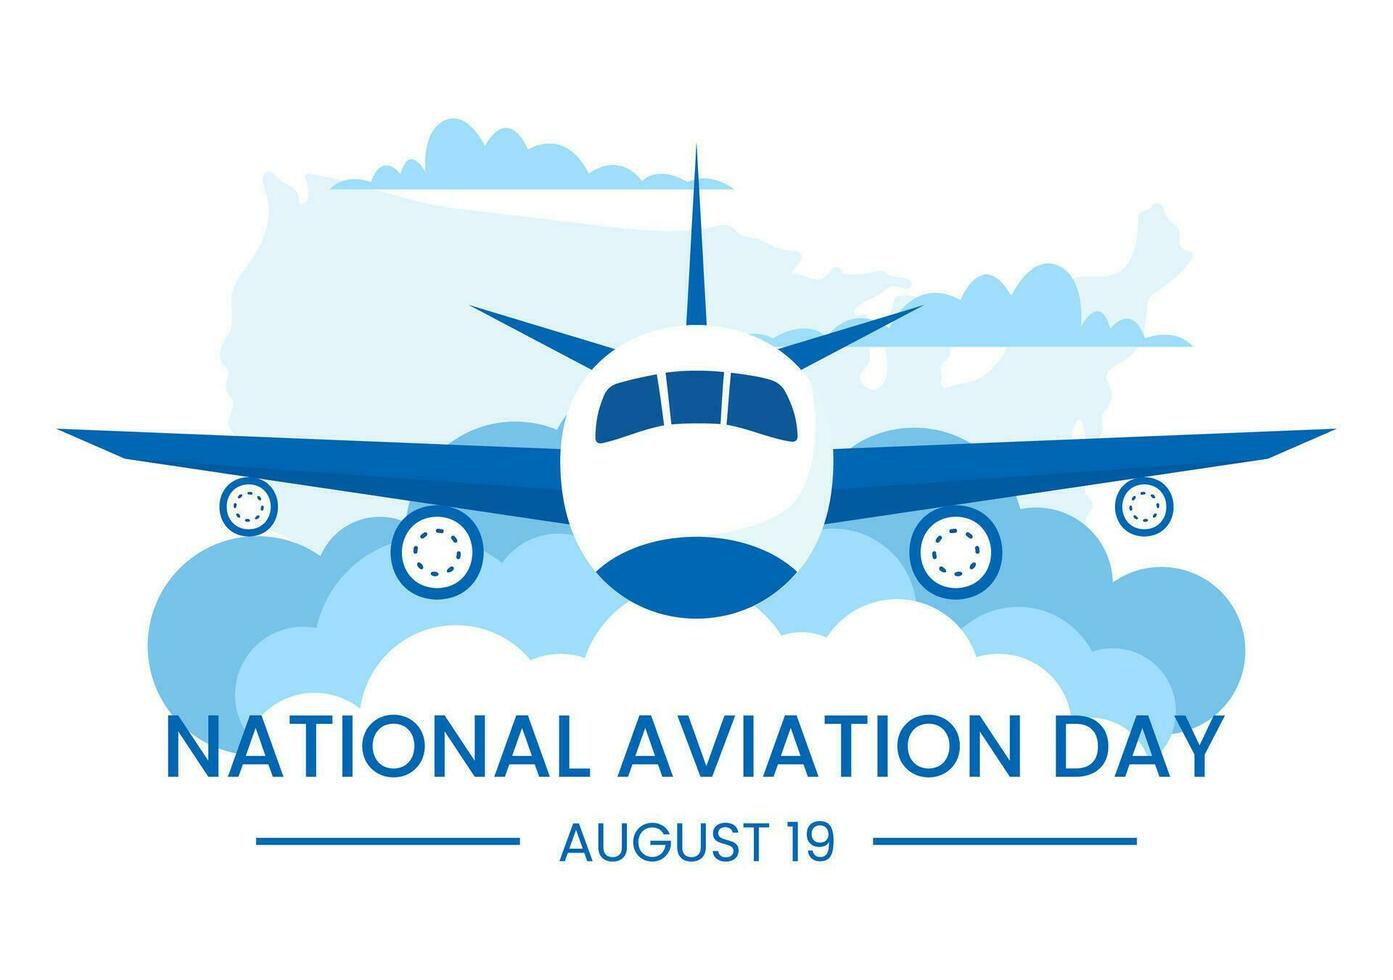 nacional aviación día vector ilustración de avión con cielo azul antecedentes y unido estados bandera en plano dibujos animados mano dibujado plantillas